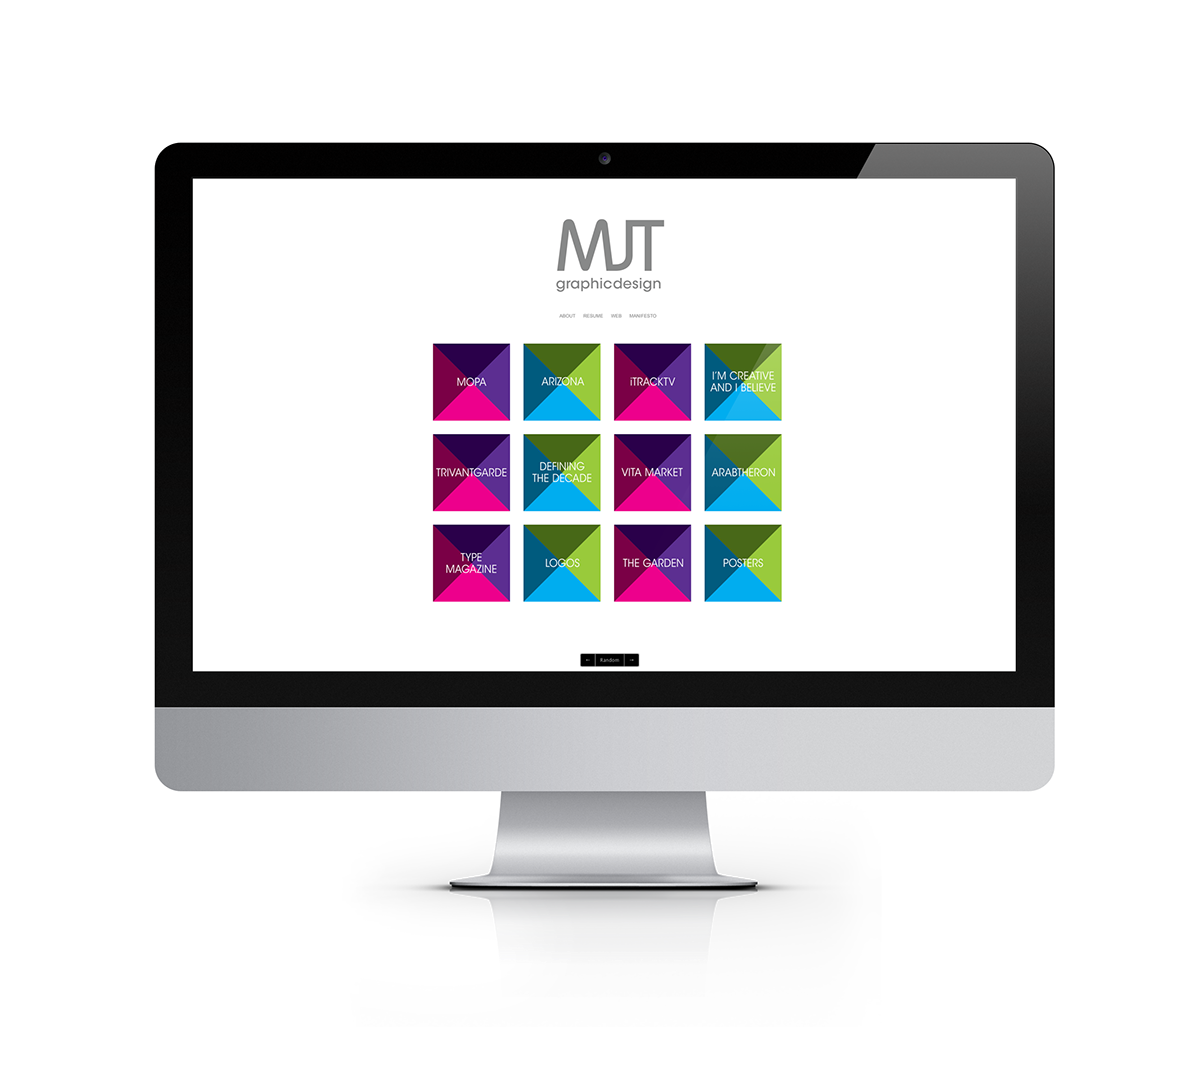 Self Promotion identity Resume Business Cards MJT Graphic Designer colorful squares logo Website Promotion me mockups pattern